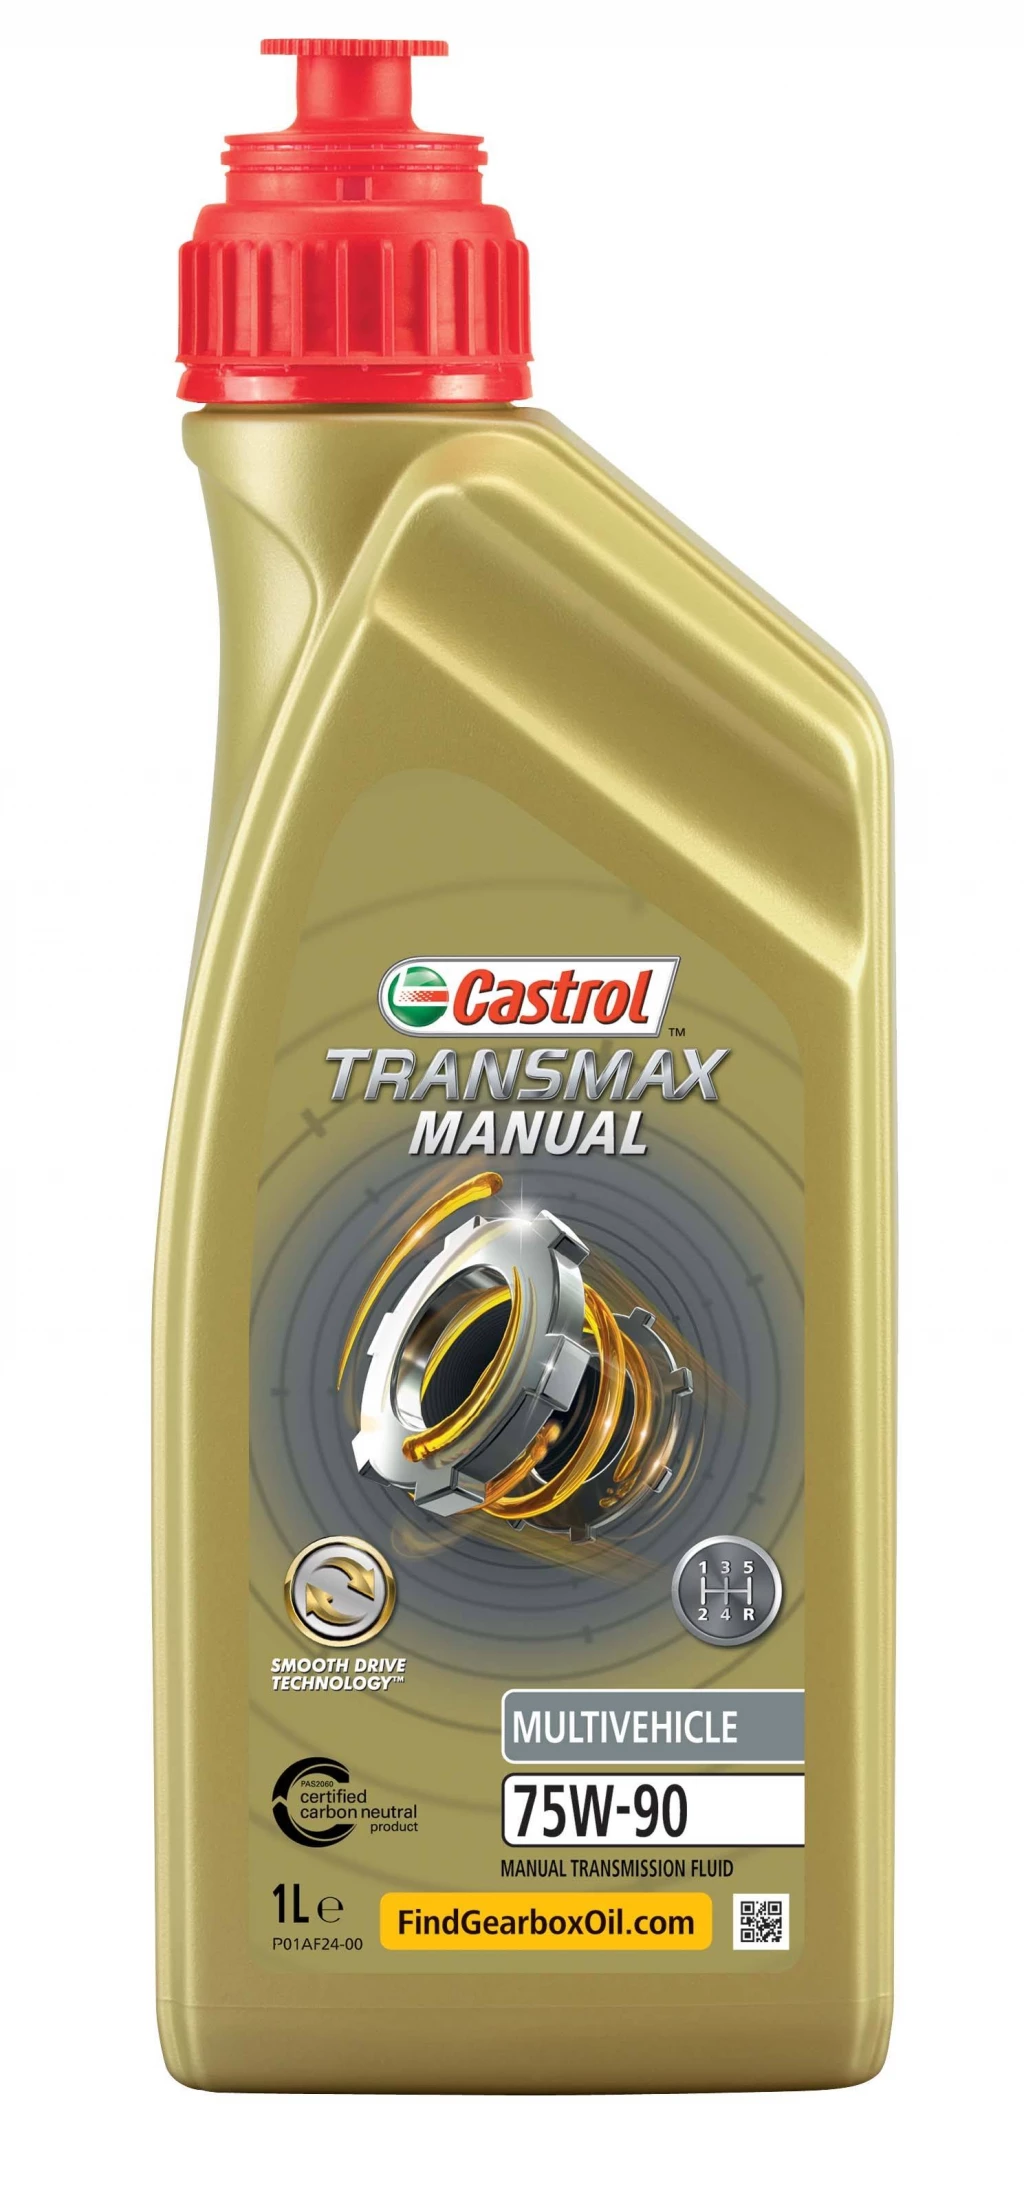 Масло трансмиссионное Castrol Transmax Manual Multivchicle 75W-90 синтетическое 1 л